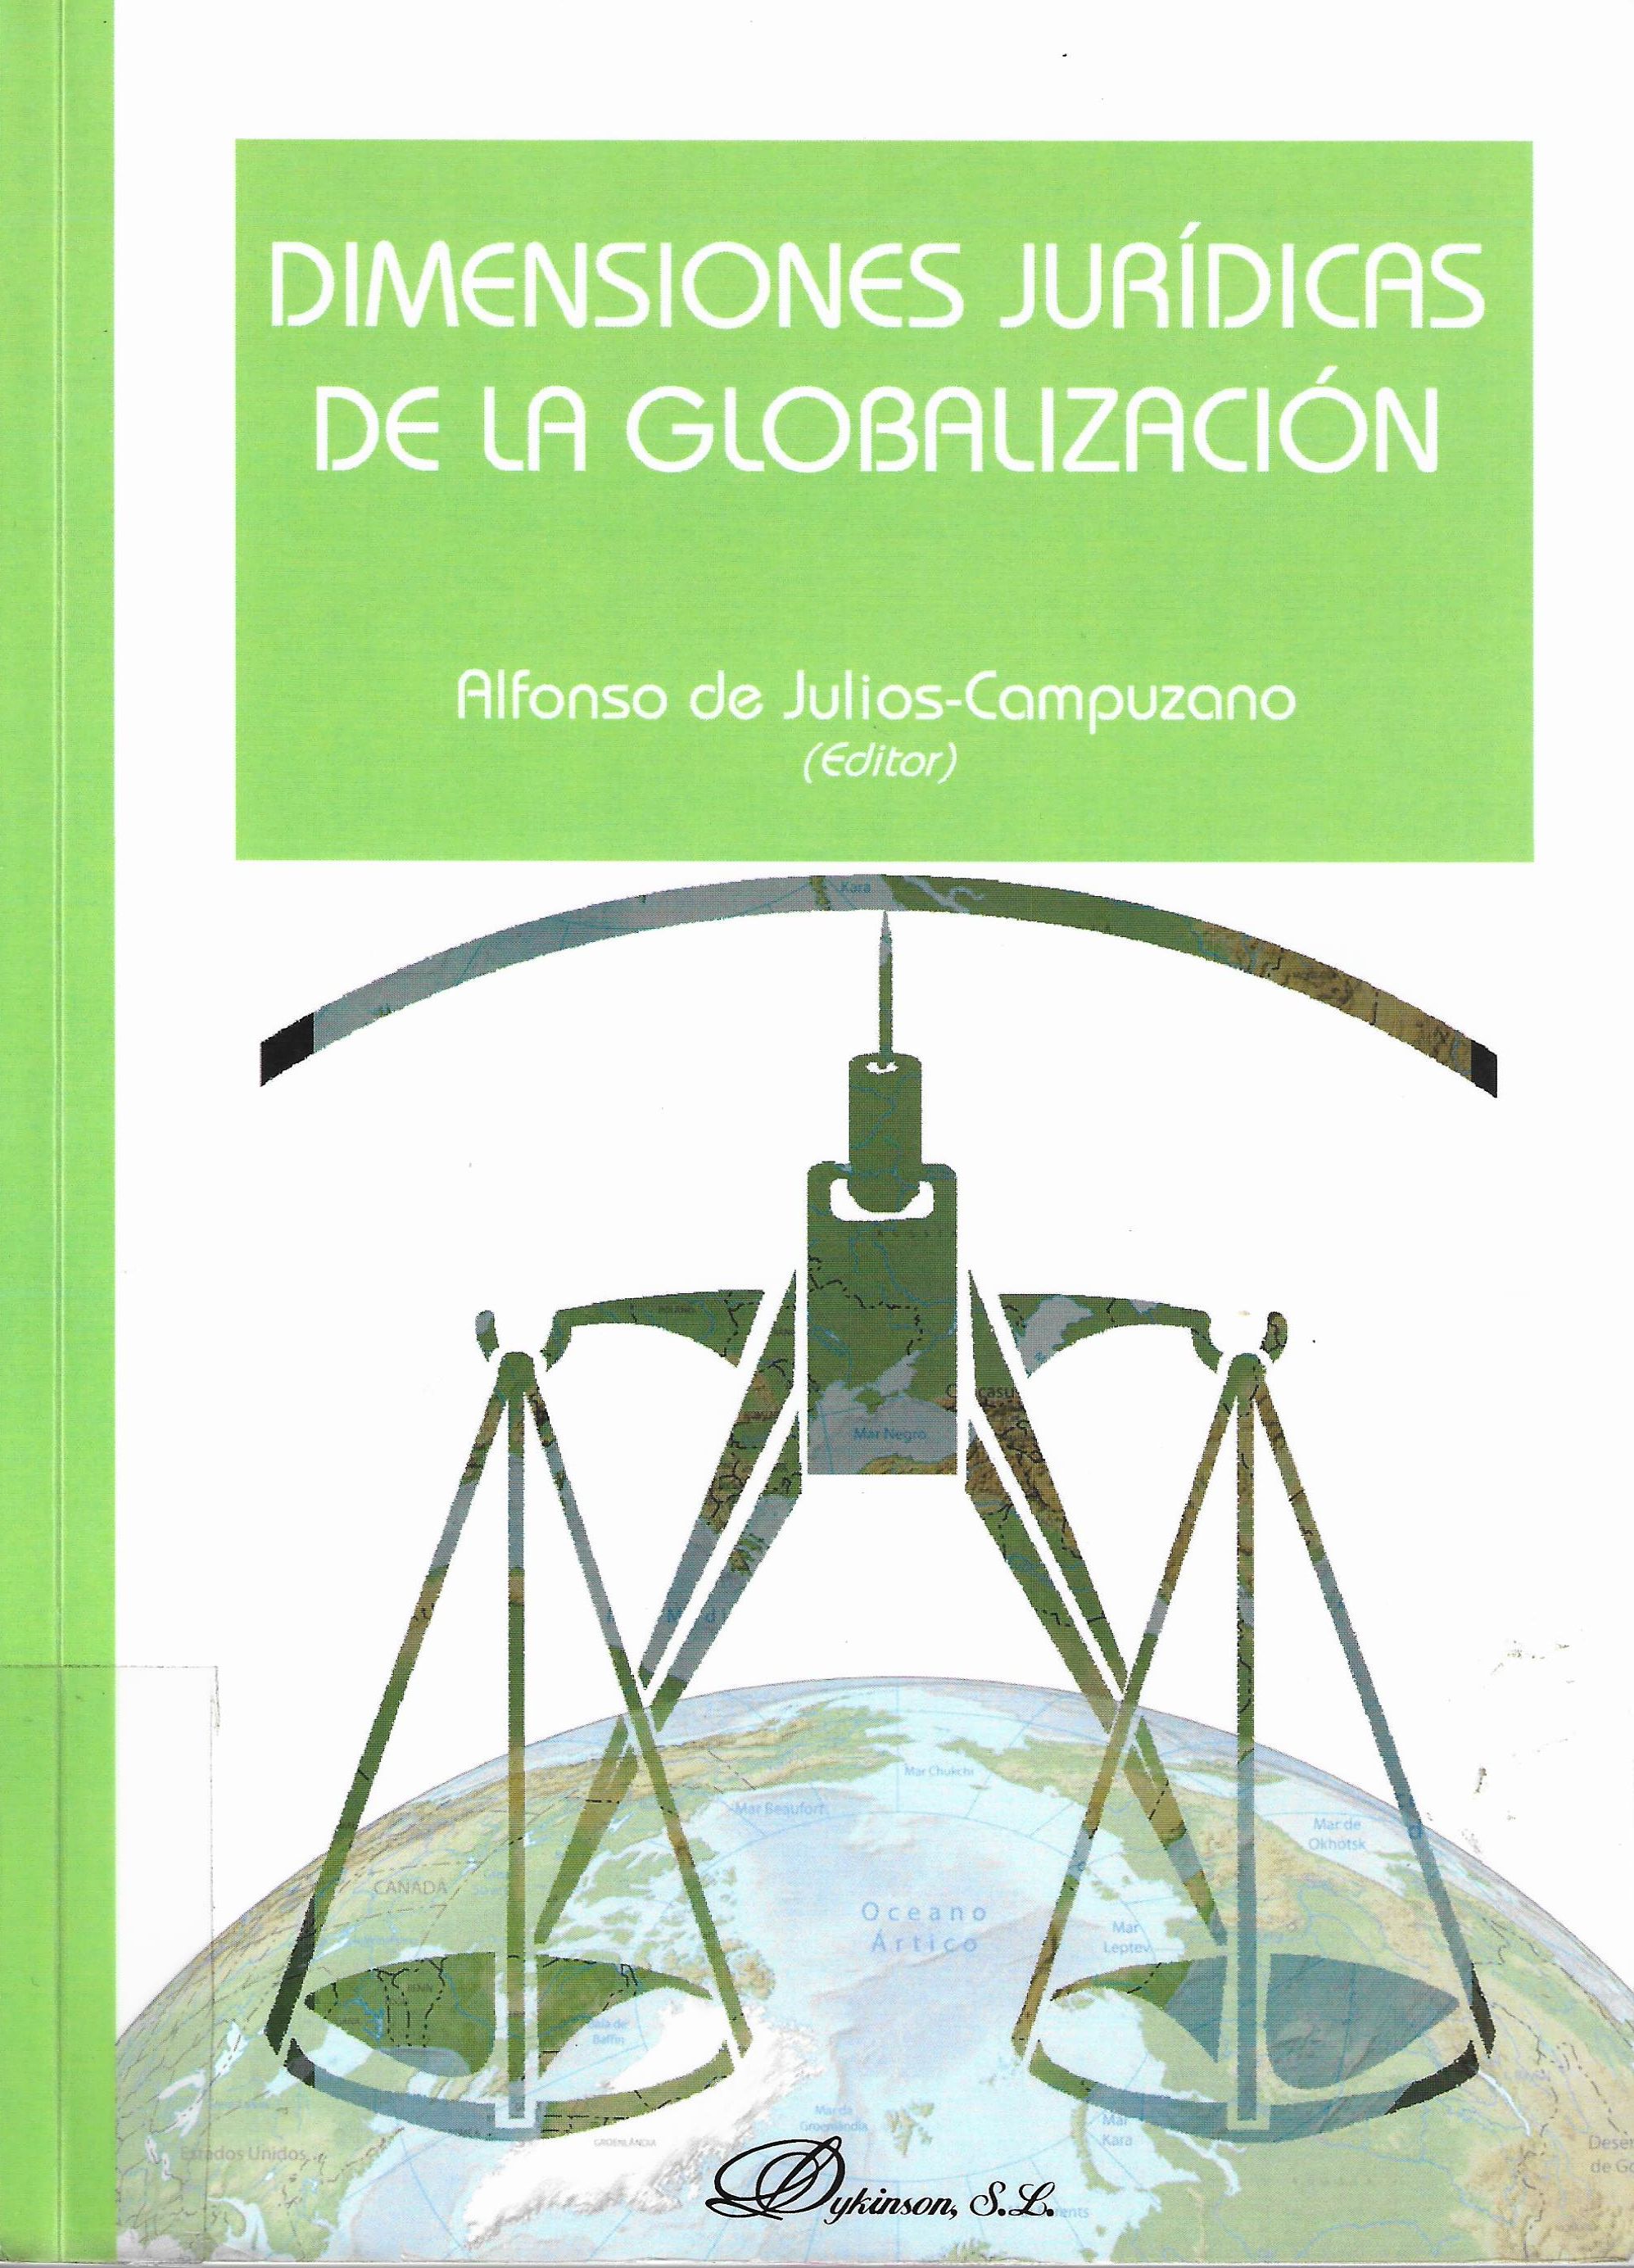 Imagen de portada del libro Dimensiones jurídicas de la globalización